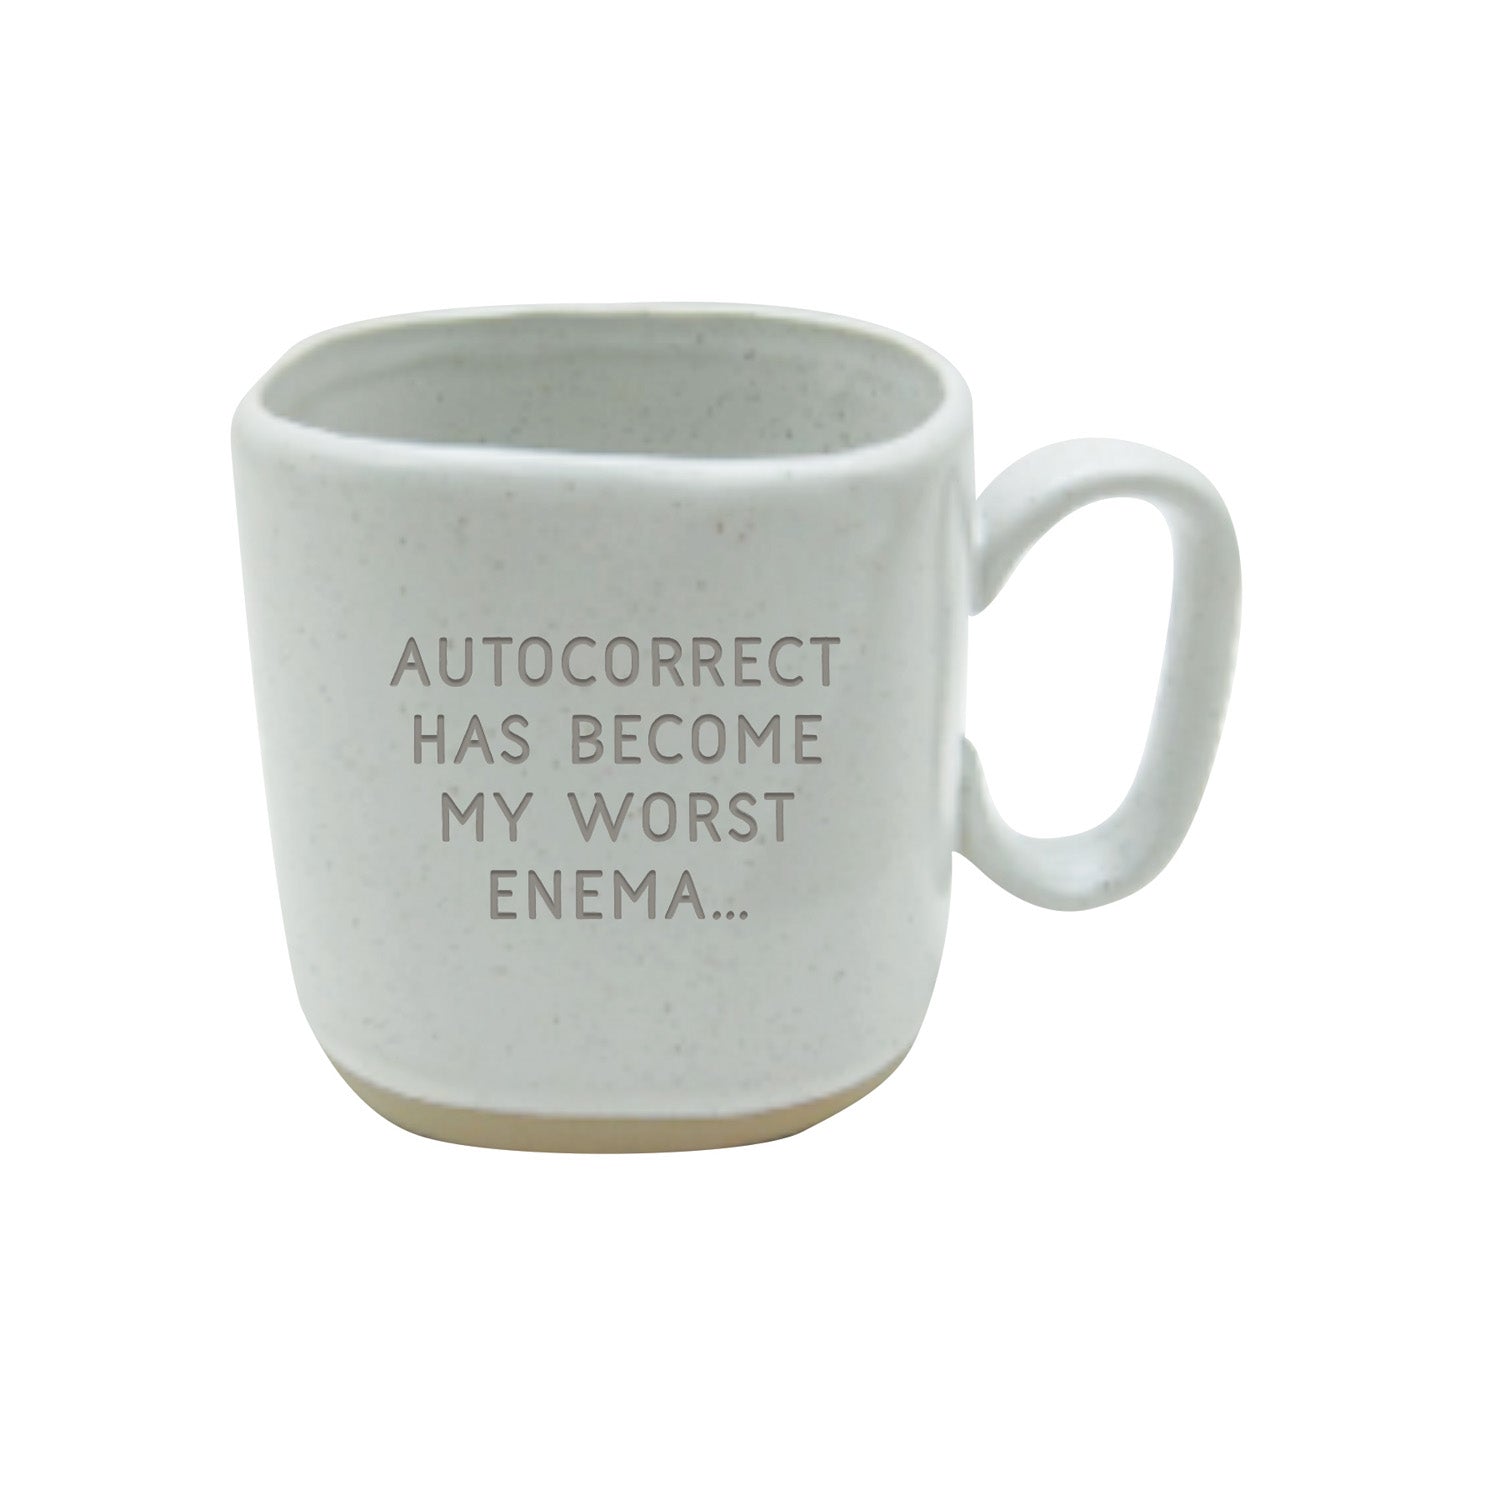 16oz Autocorrect Ceramic Cup